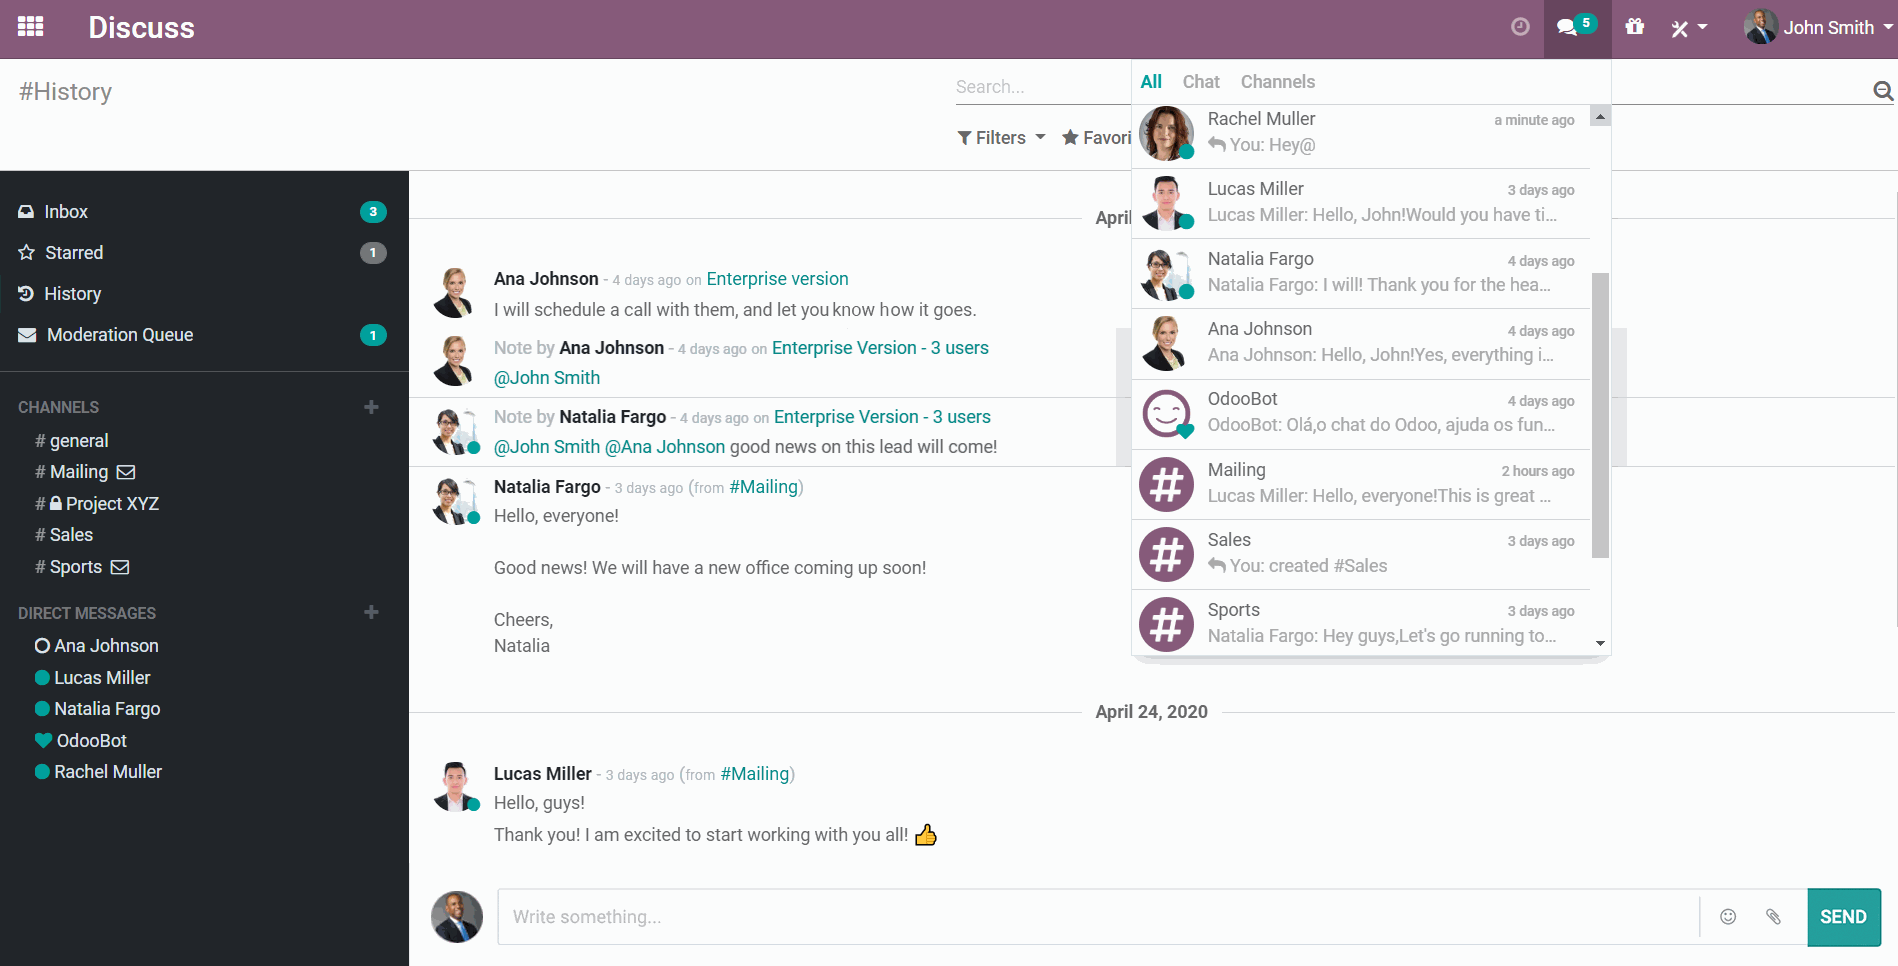 De interface van Odoo Chat waarop chatmeldingen te zien zijn 